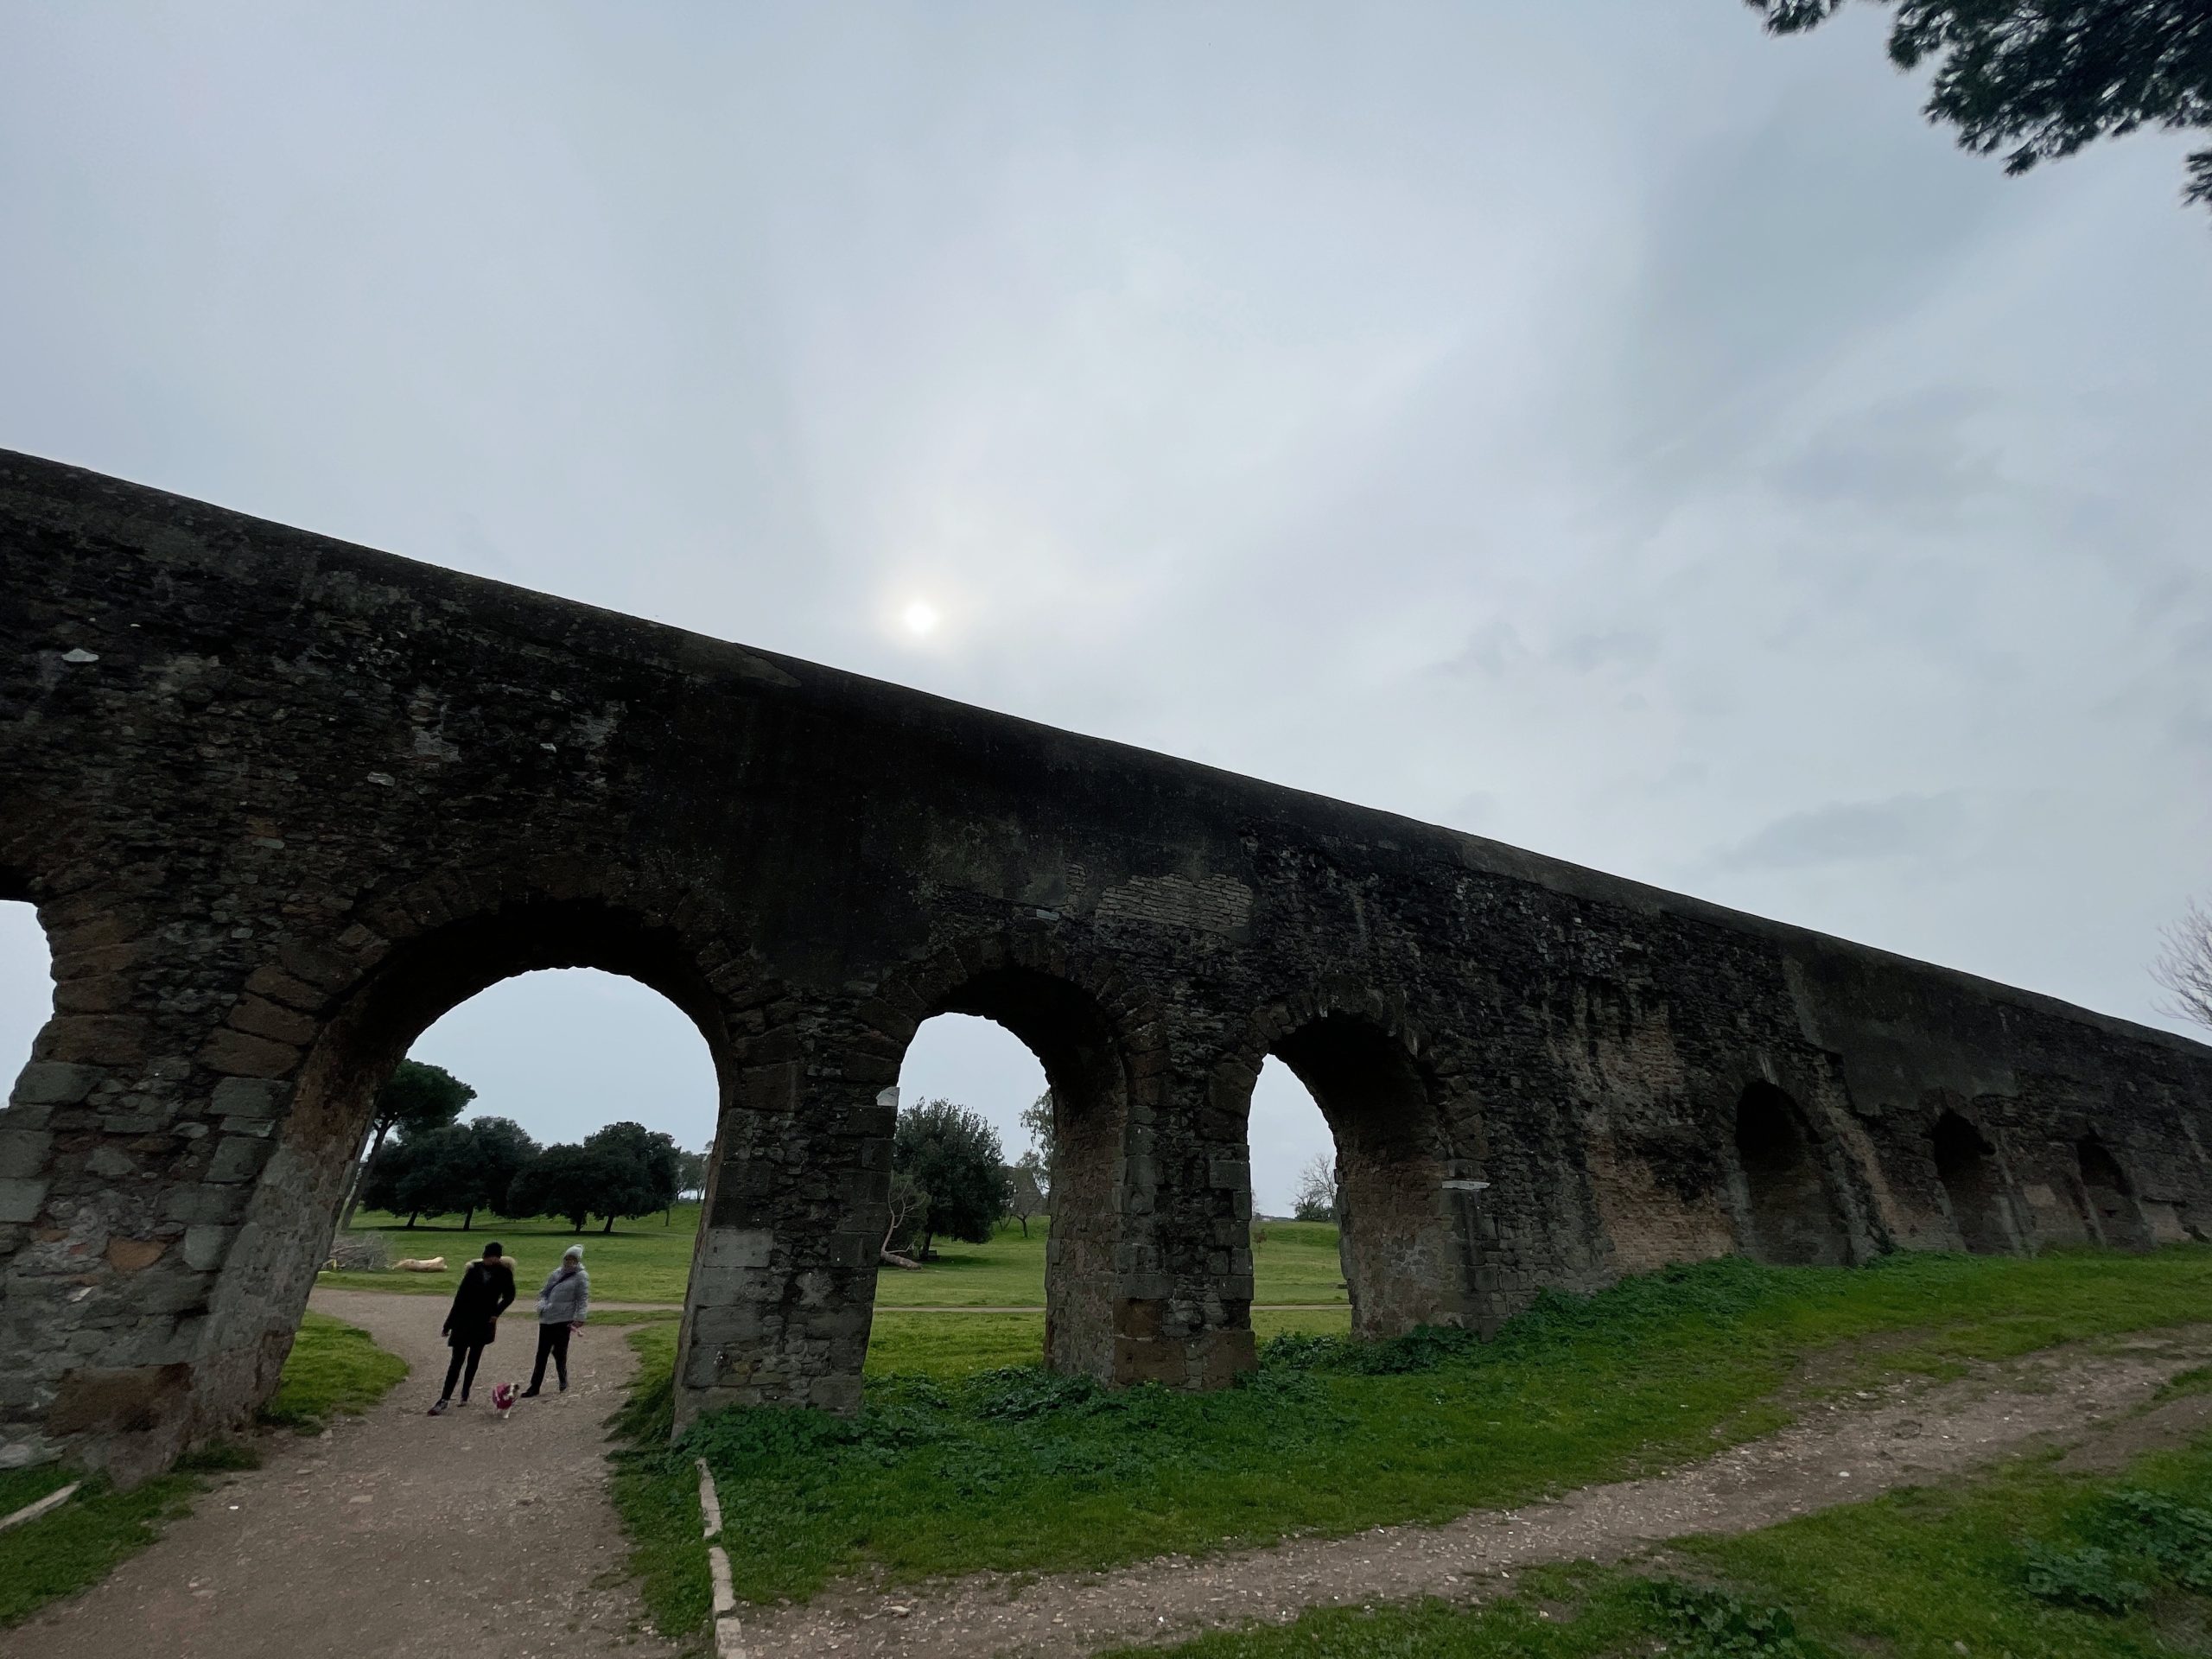 park of aquaducts